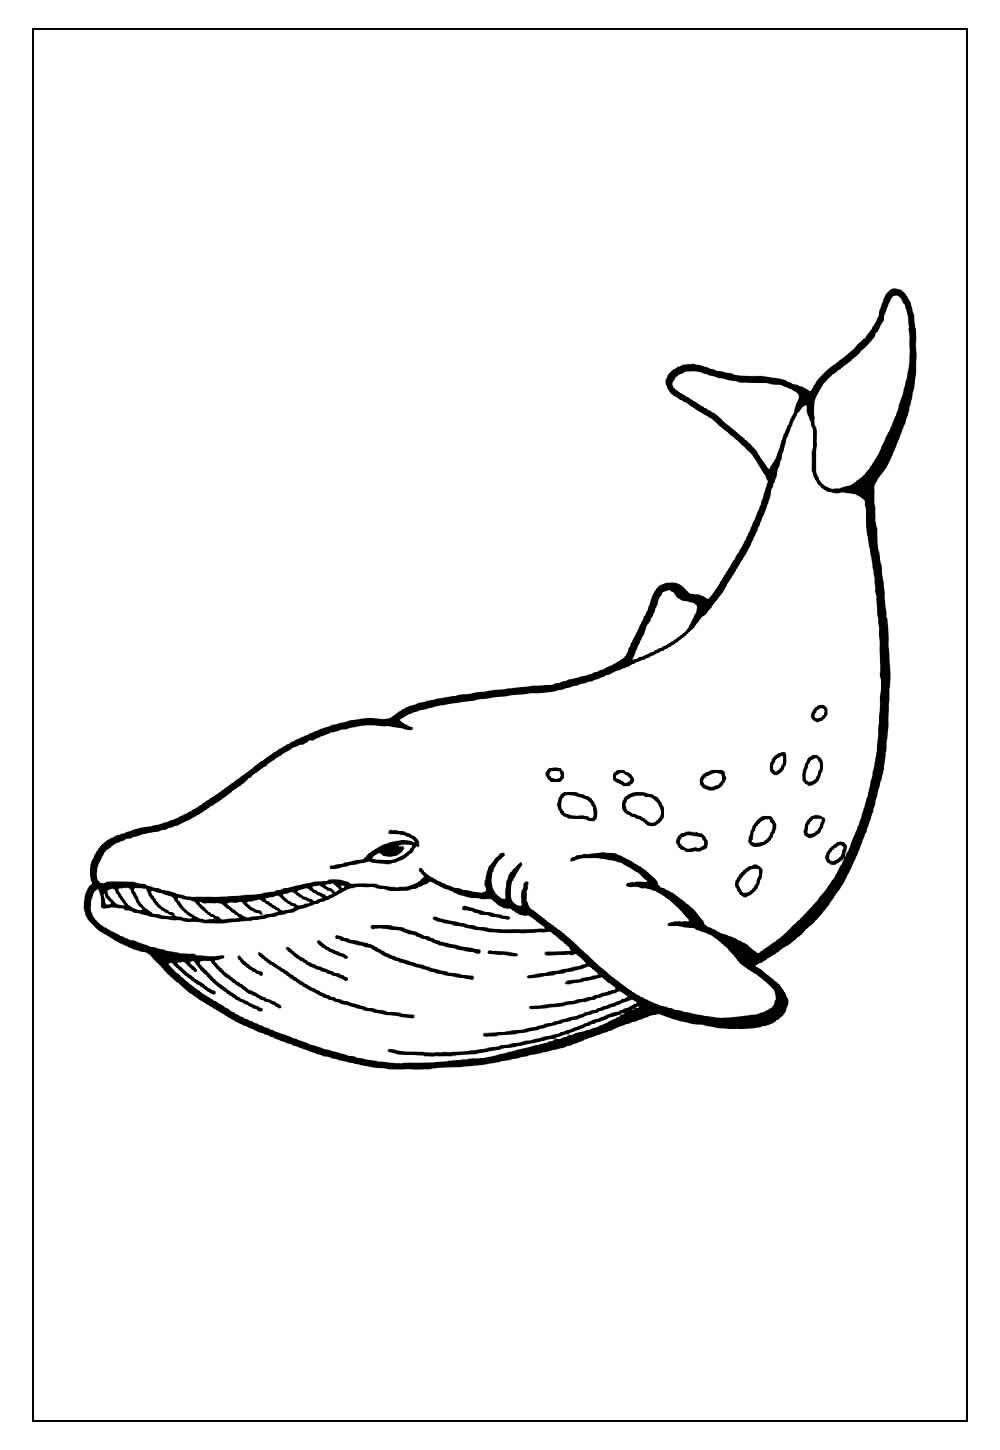 Desenho de Baleia para colorir